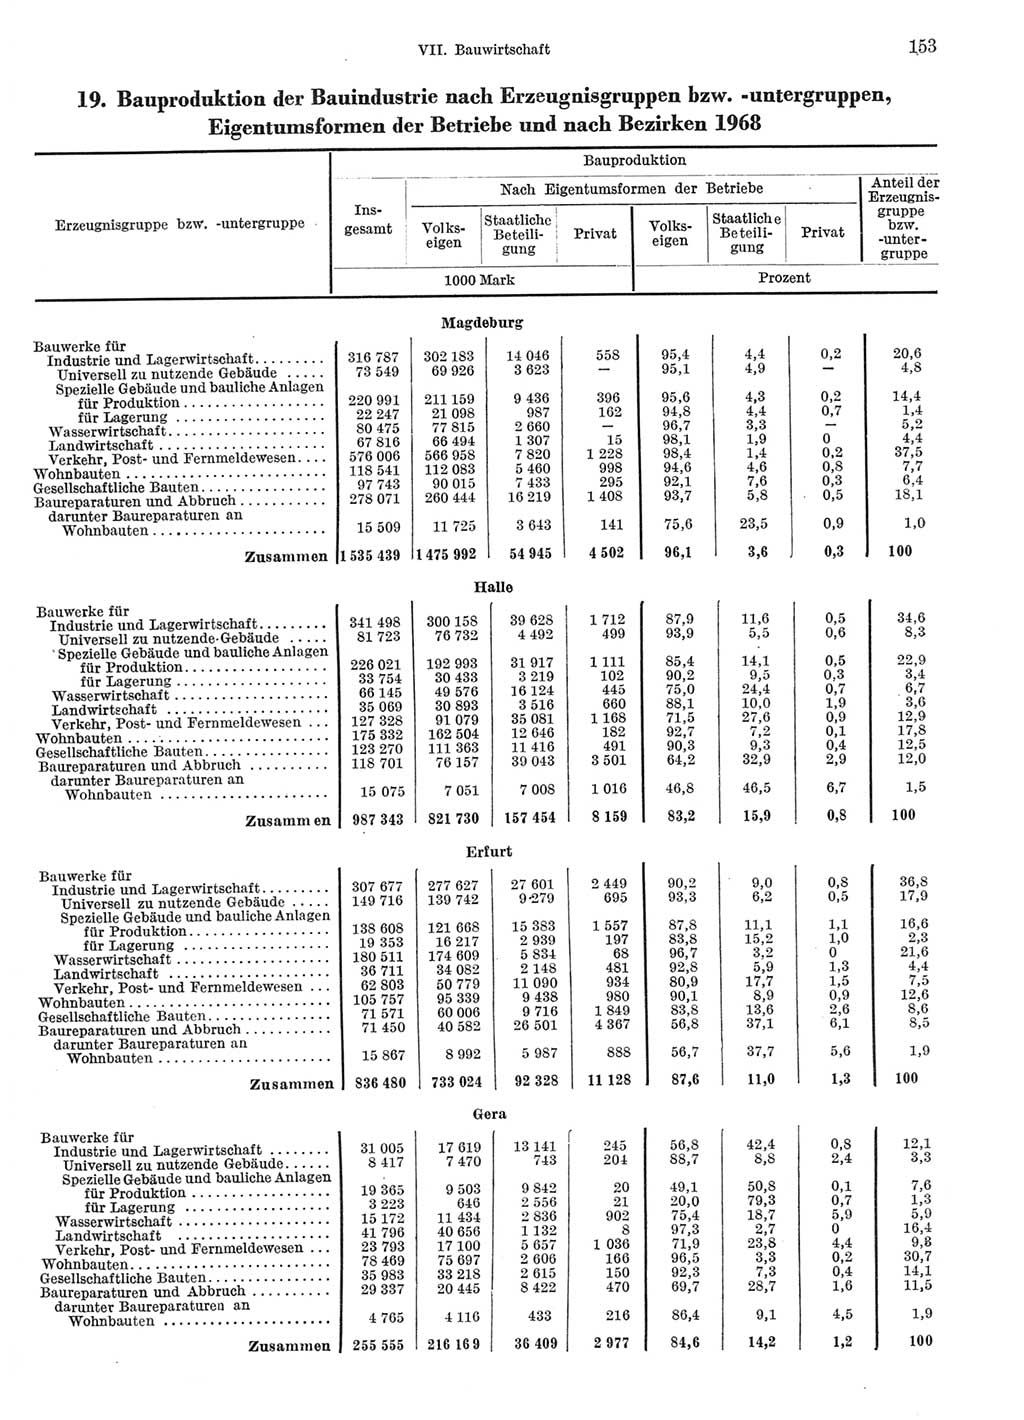 Statistisches Jahrbuch der Deutschen Demokratischen Republik (DDR) 1969, Seite 153 (Stat. Jb. DDR 1969, S. 153)